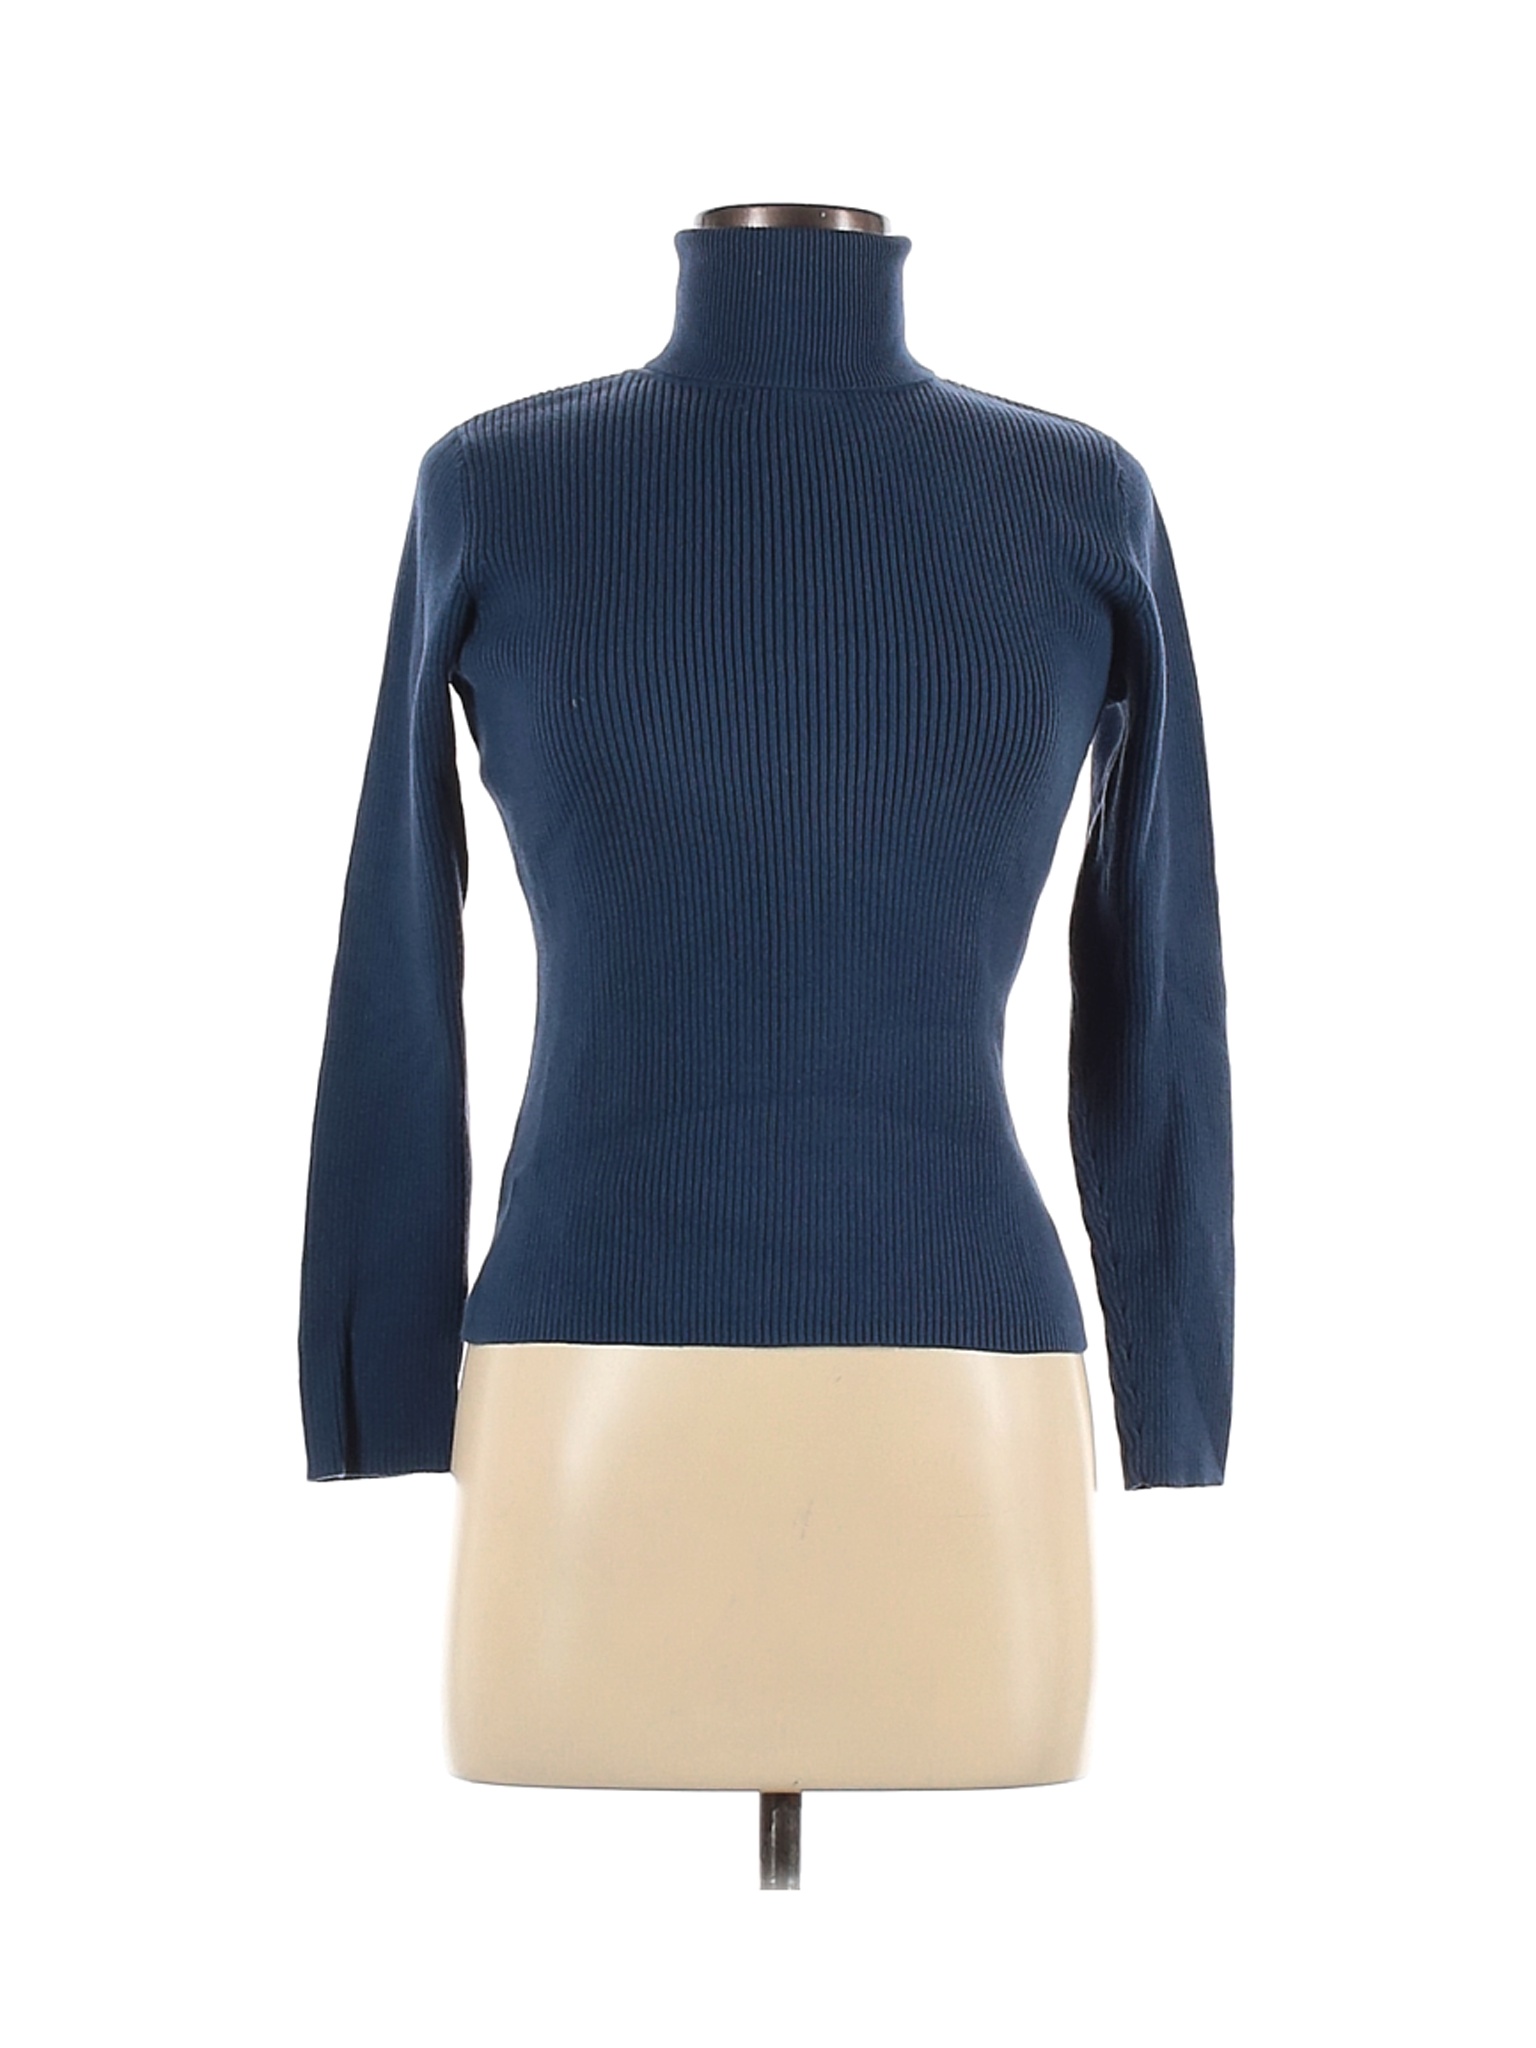 Villager by Liz Claiborne Women Blue Turtleneck Sweater M | eBay